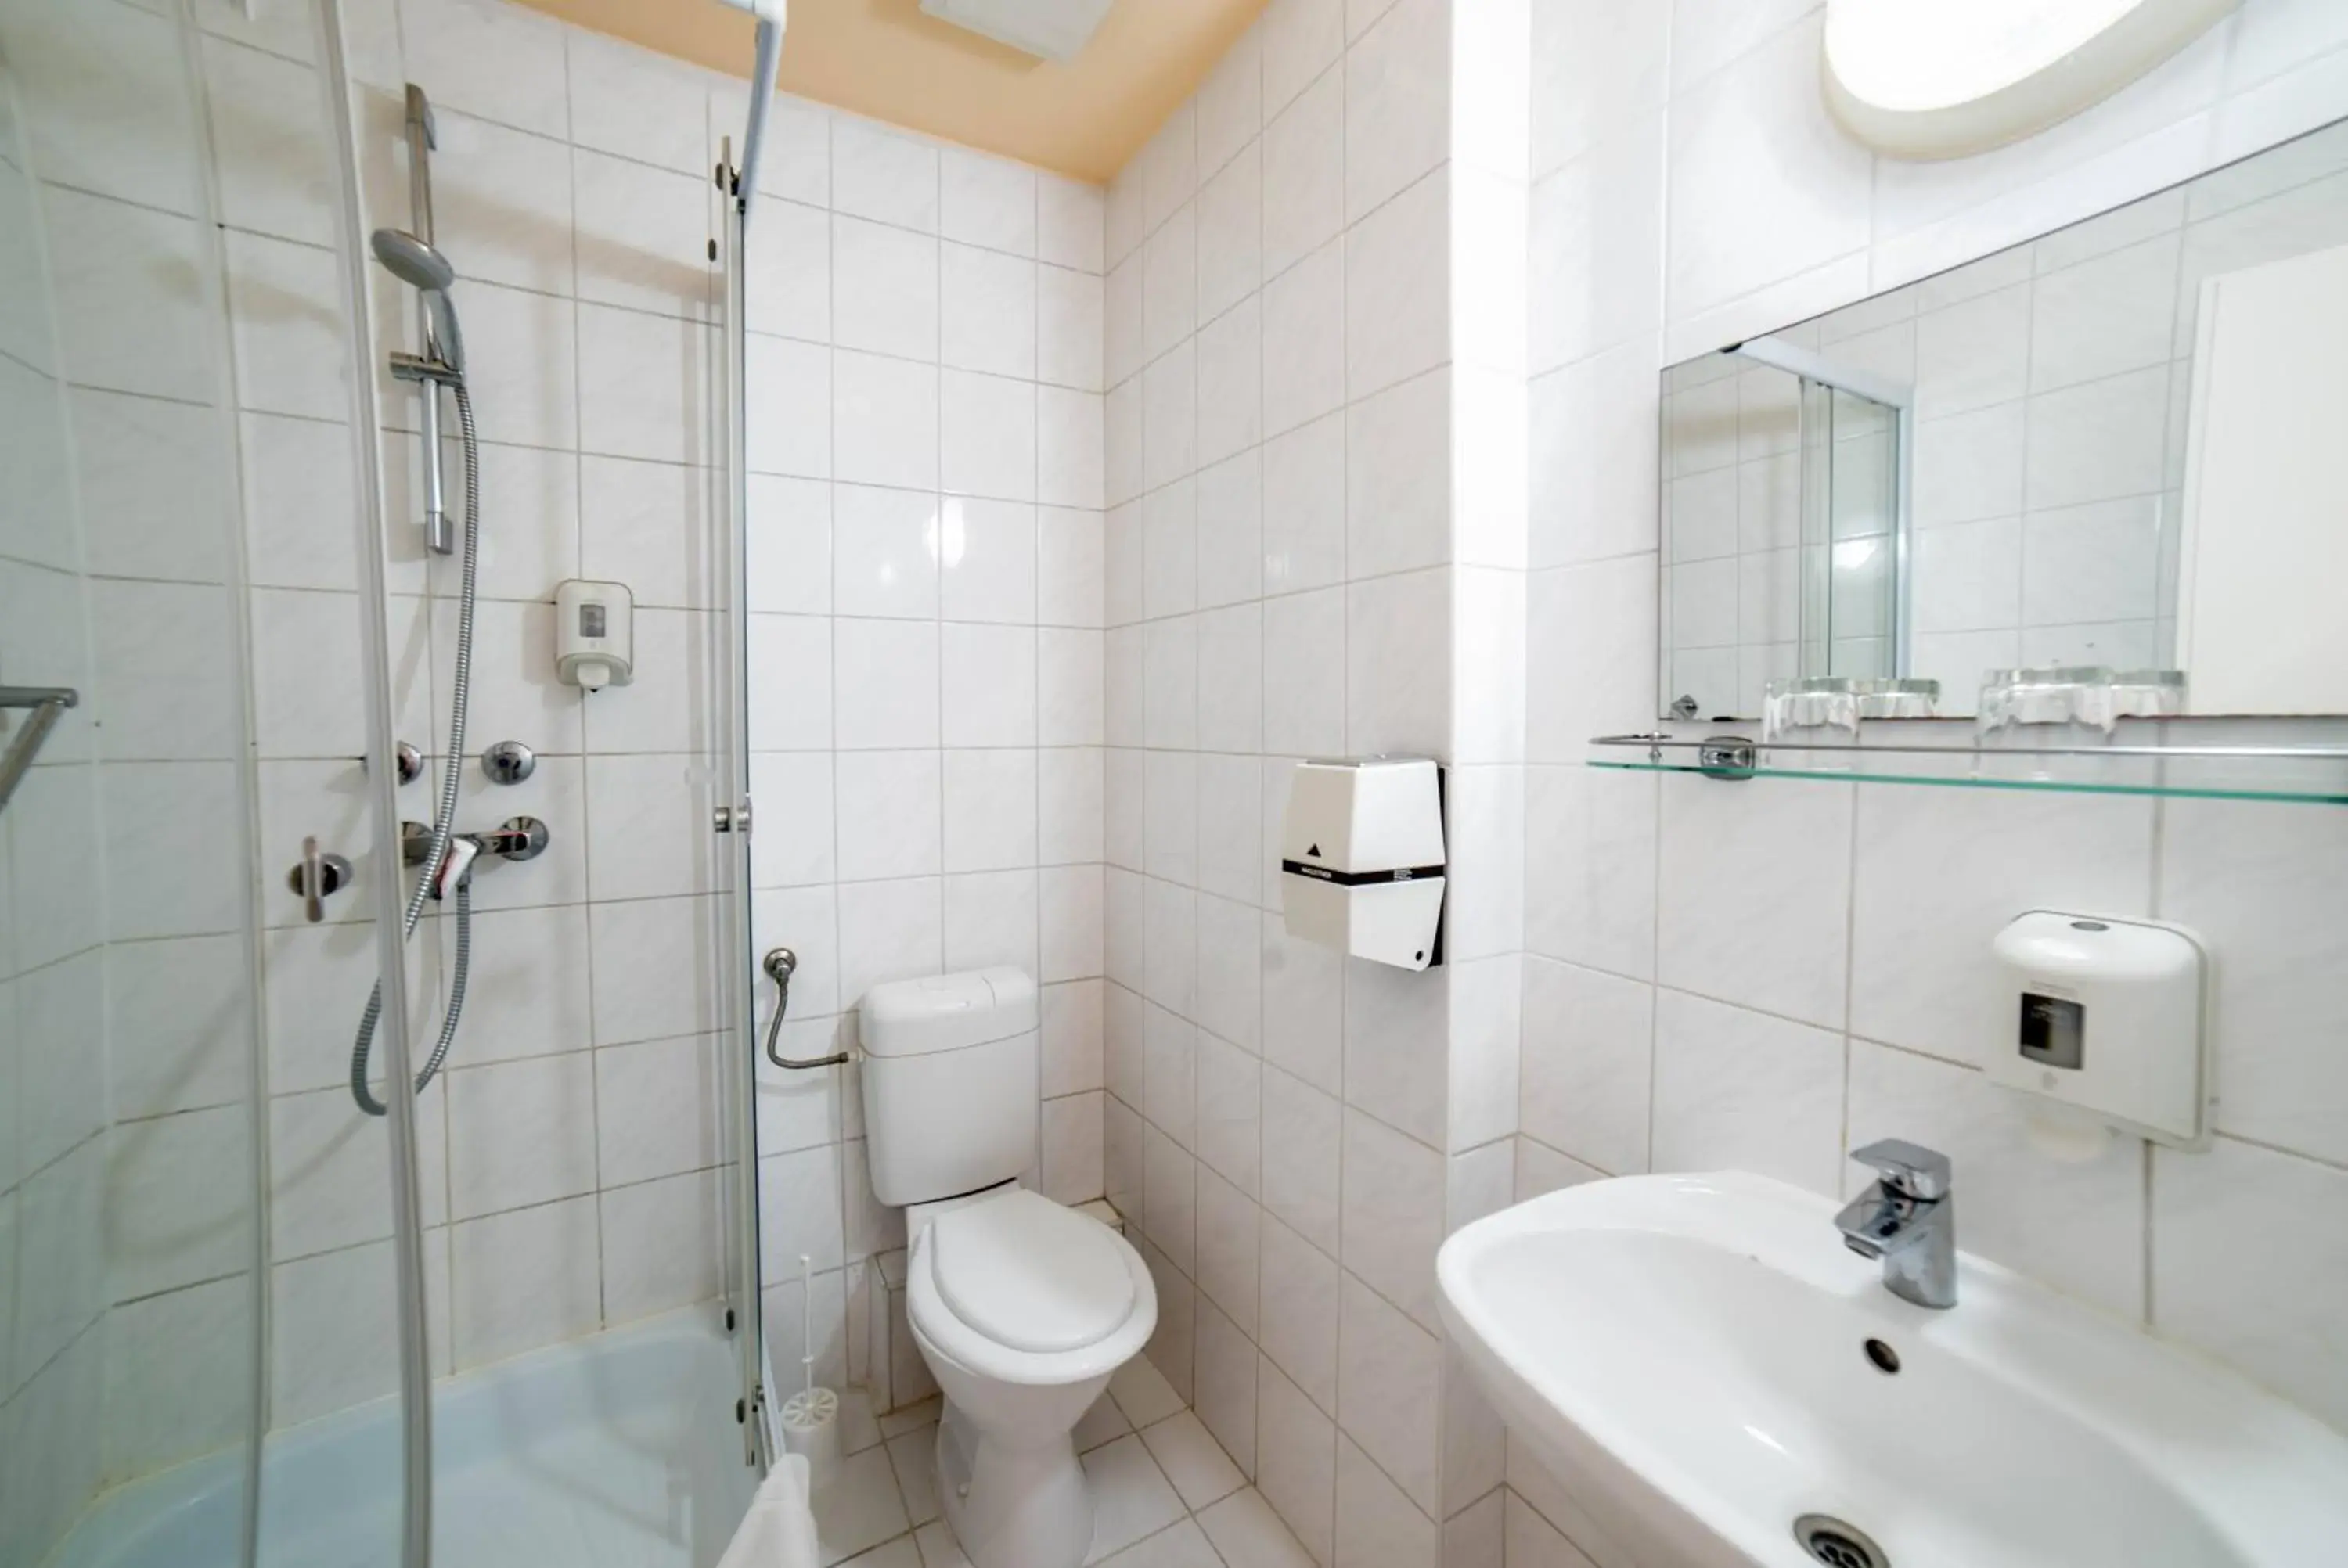 Toilet, Bathroom in Homoky Hotels Bestline Hotel